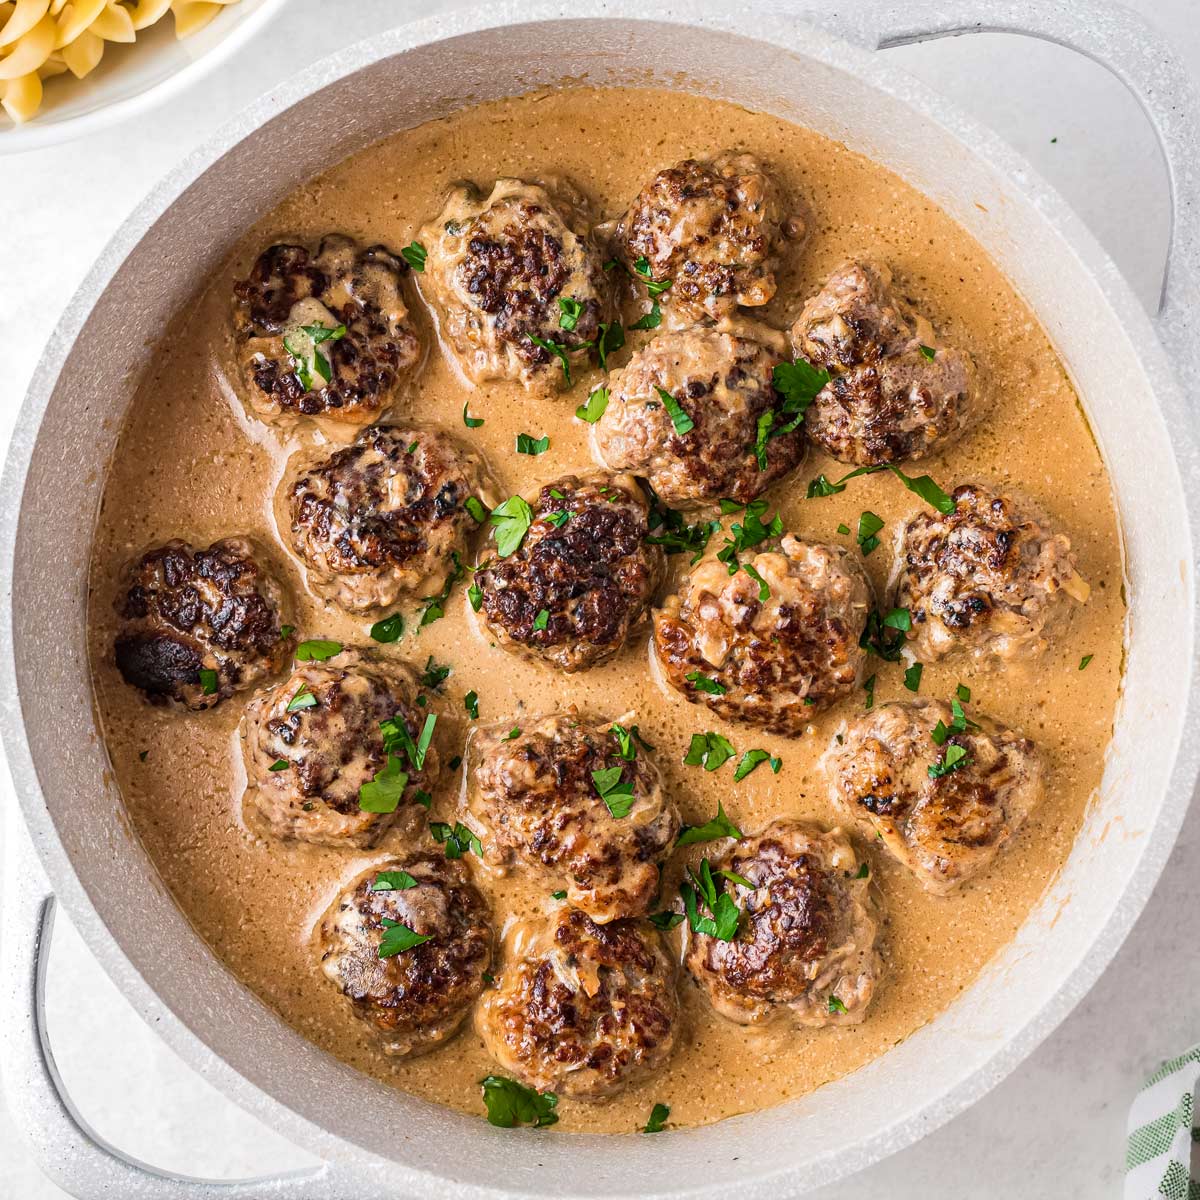 Swedish Meatballs (easy dinner idea) - The Chunky Chef